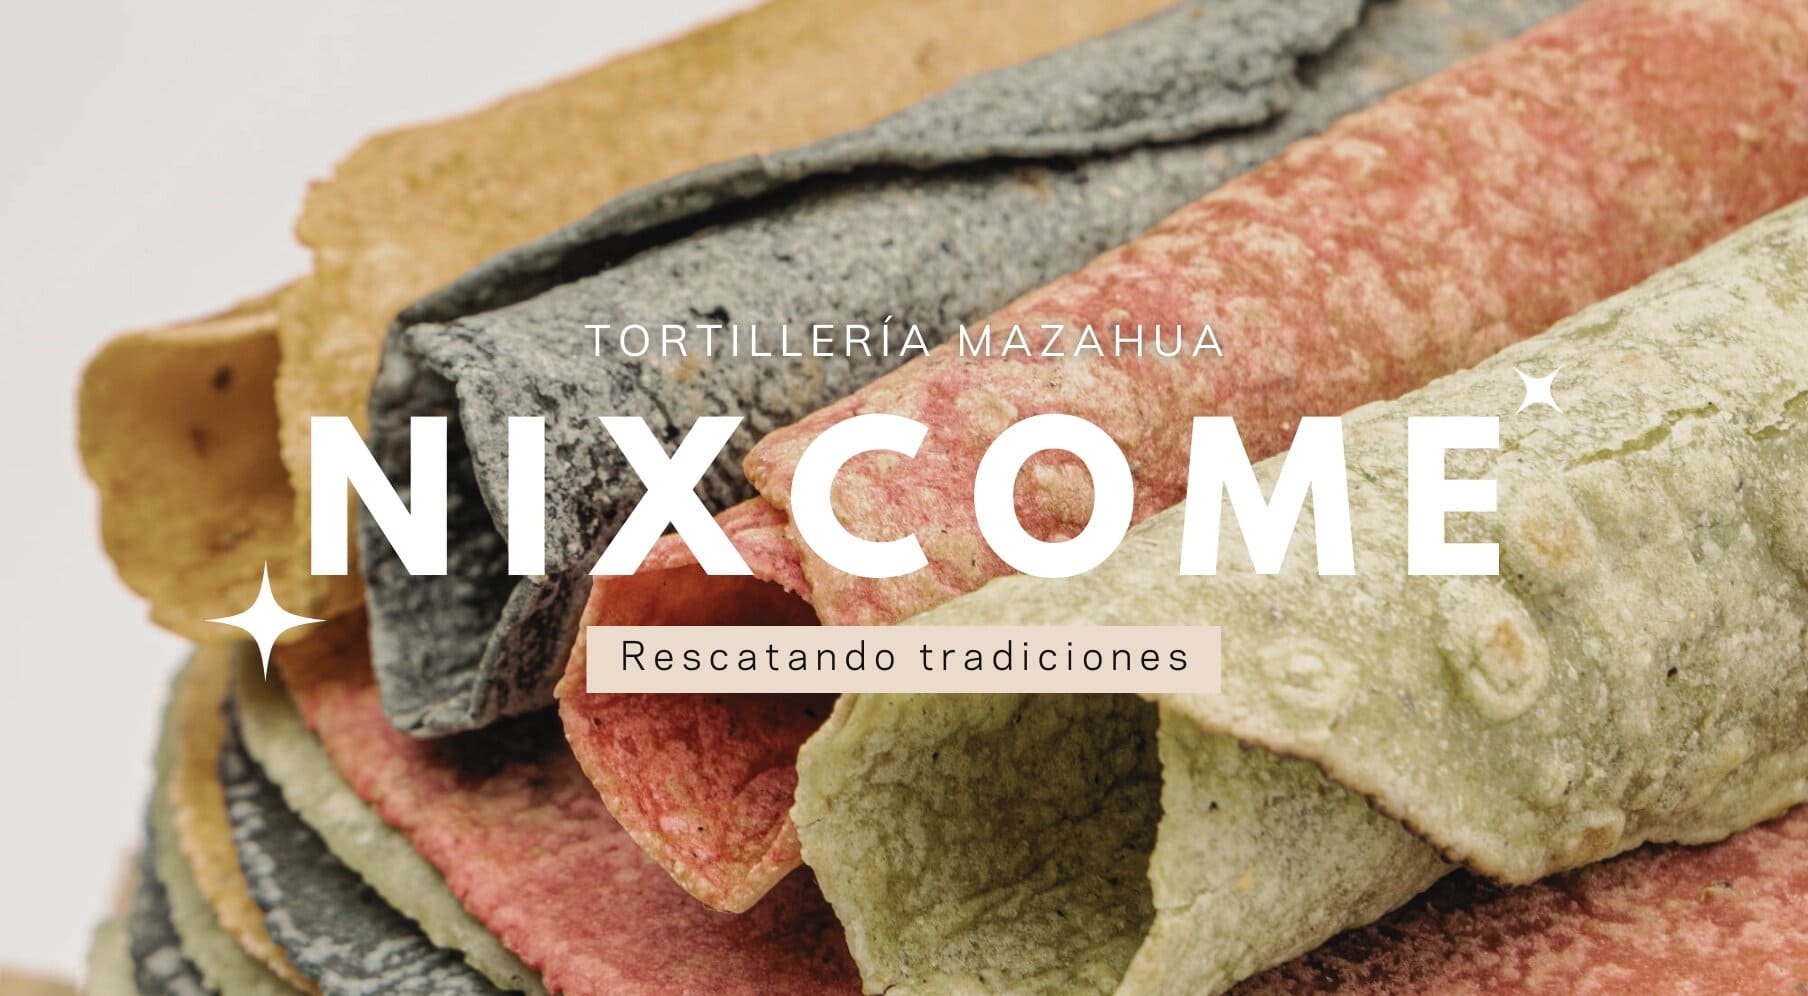 Foto de banner de la creadora Nixcome, correspondiente a unas tortillas de colores amarilla, azul, roja y verde, de acuerdo a los diferentes tintes de los vegetales.